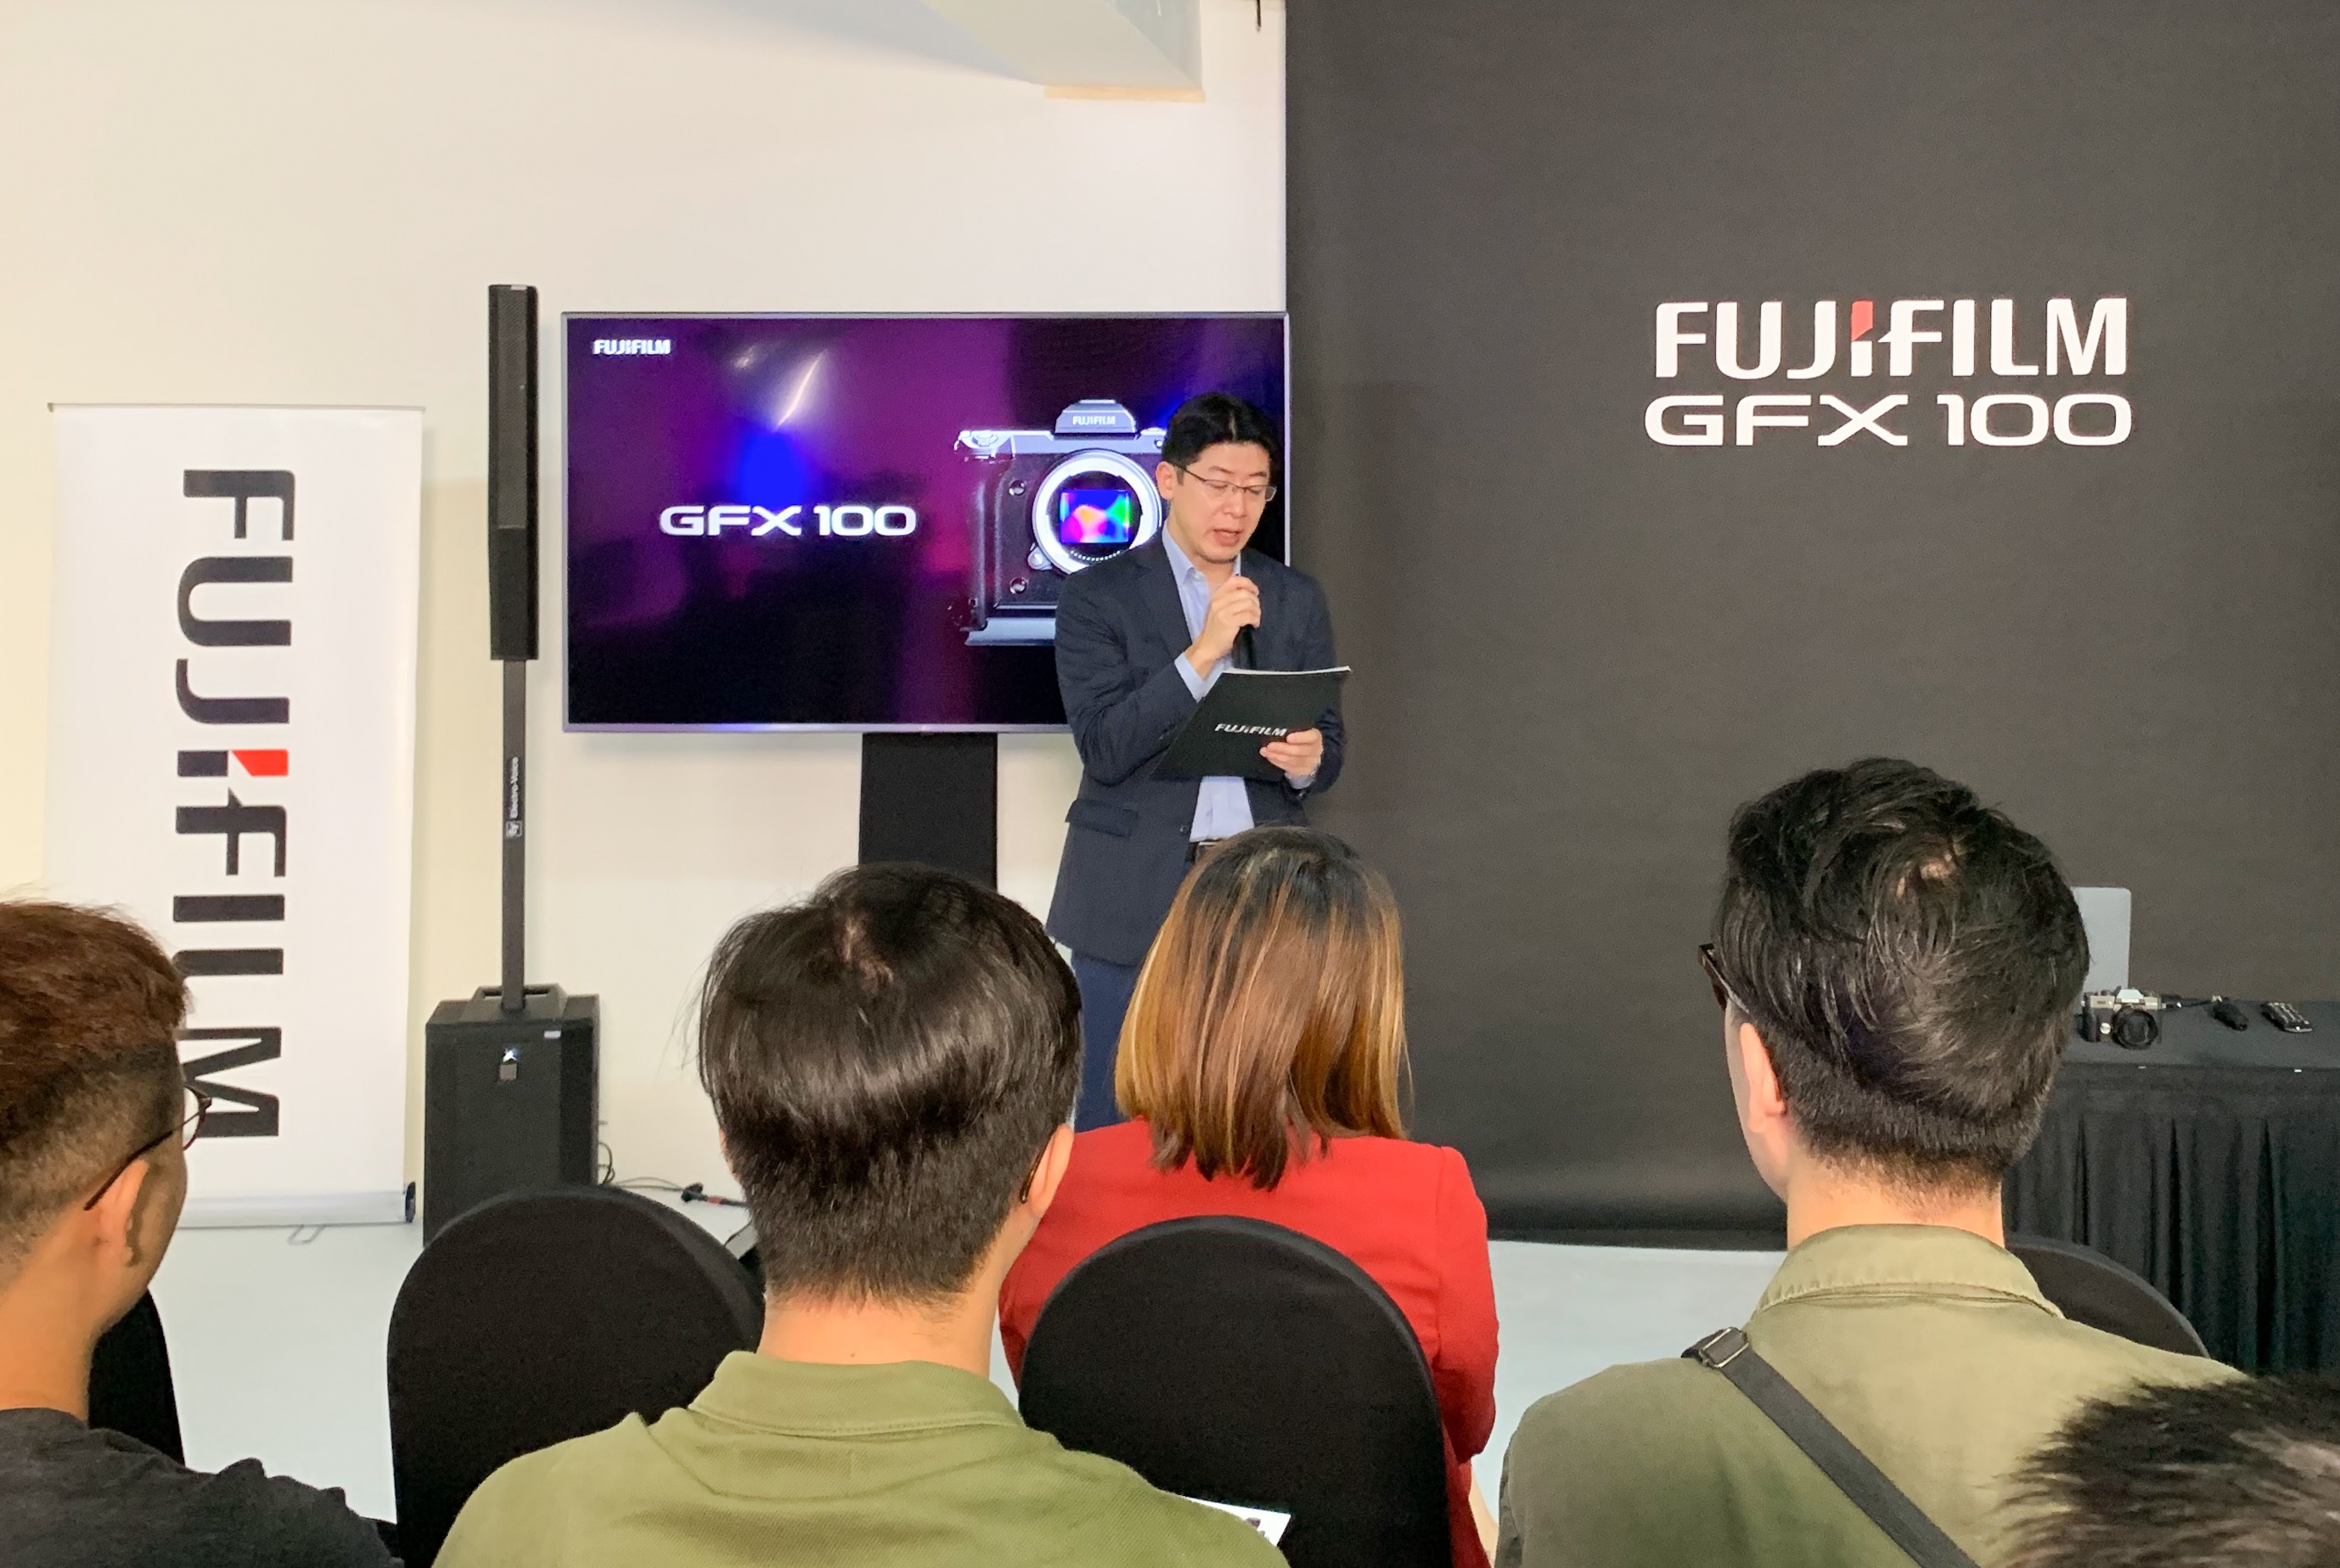 Ra mắt máy ảnh Fujifilm GFX100 tại Việt Nam: siêu phẩm Mirrorless cảm biến Medium Format 102MP, giá 255 triệu